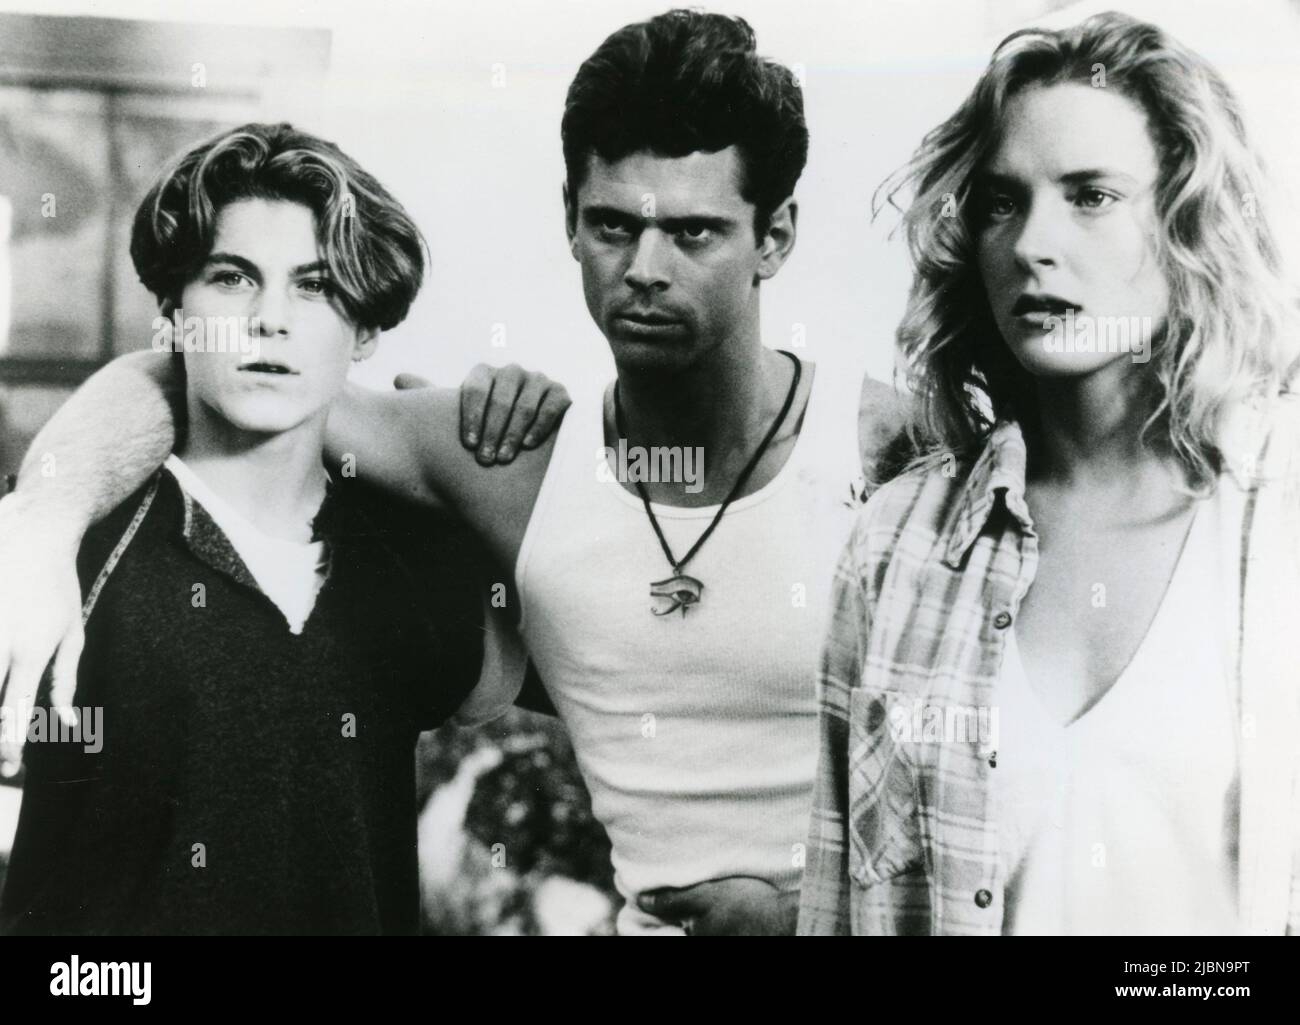 Los actores americanos Brian Green, C. Thomas Howell, y Sarah Trigger en la película Kid, USA 1990 Foto de stock